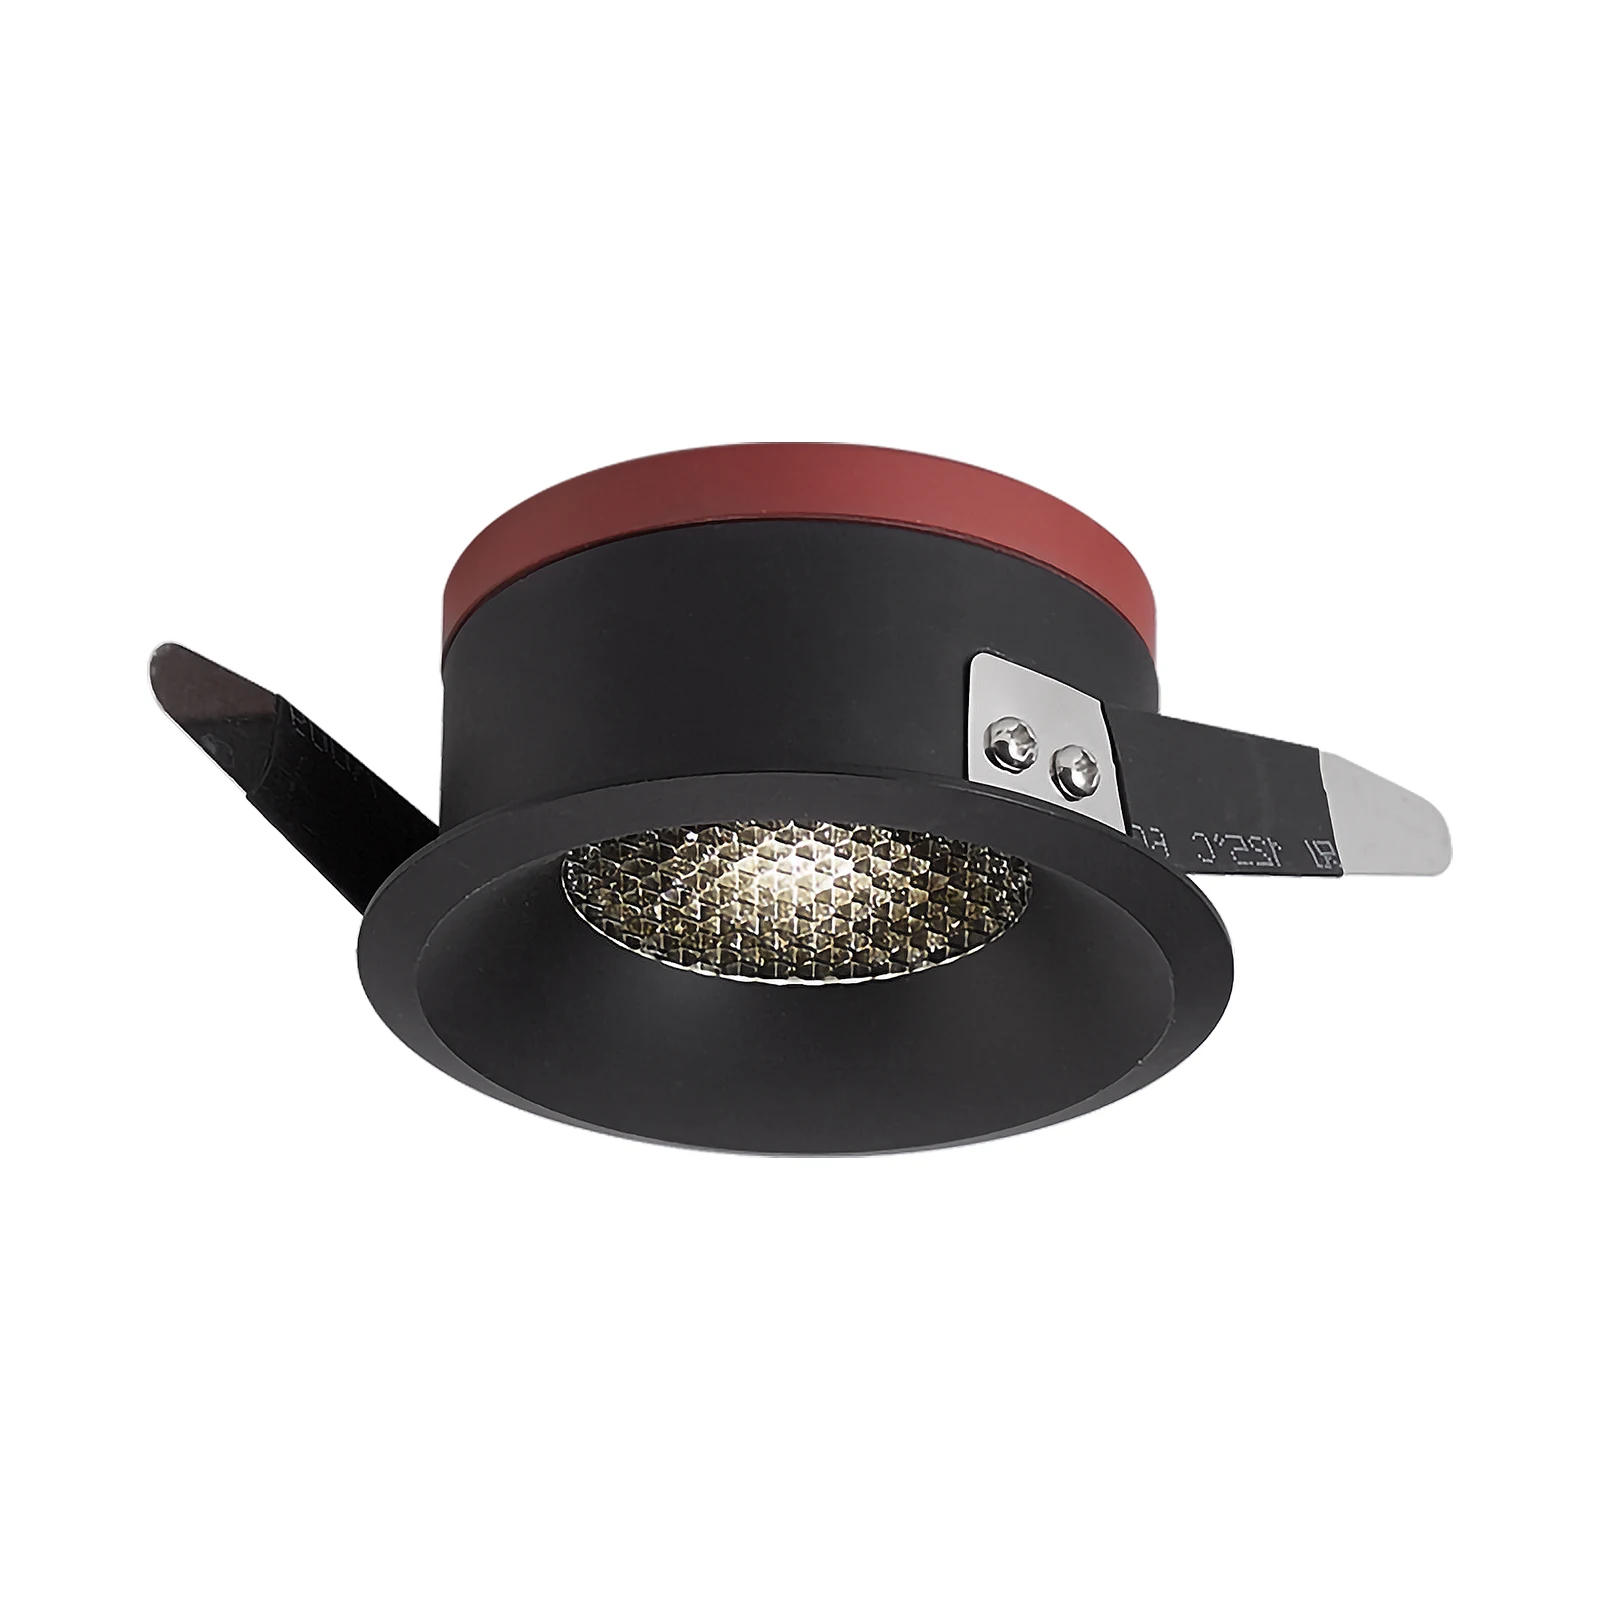 Встраиваемый светильник COB с антибликовым покрытием Honeycomb Nest, 5 Вт, 7 Вт, 12 Вт, 15 Вт, черный, белый, круглый светодиодный потолочный точечный светильник для внутреннего освещения 5